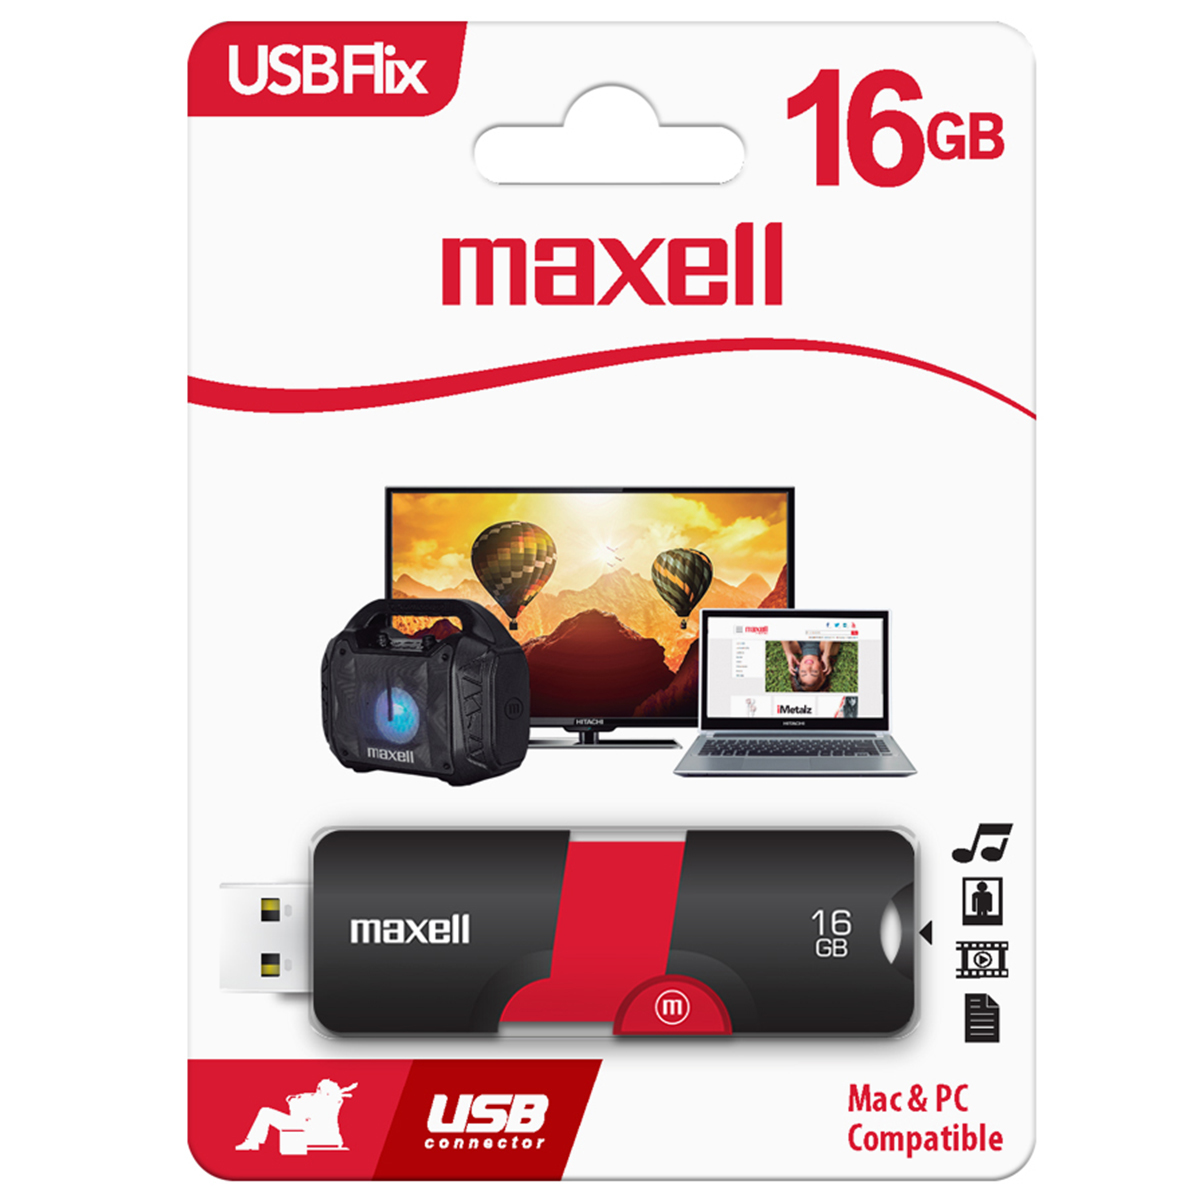 USB MAXELL FLIX 16GB